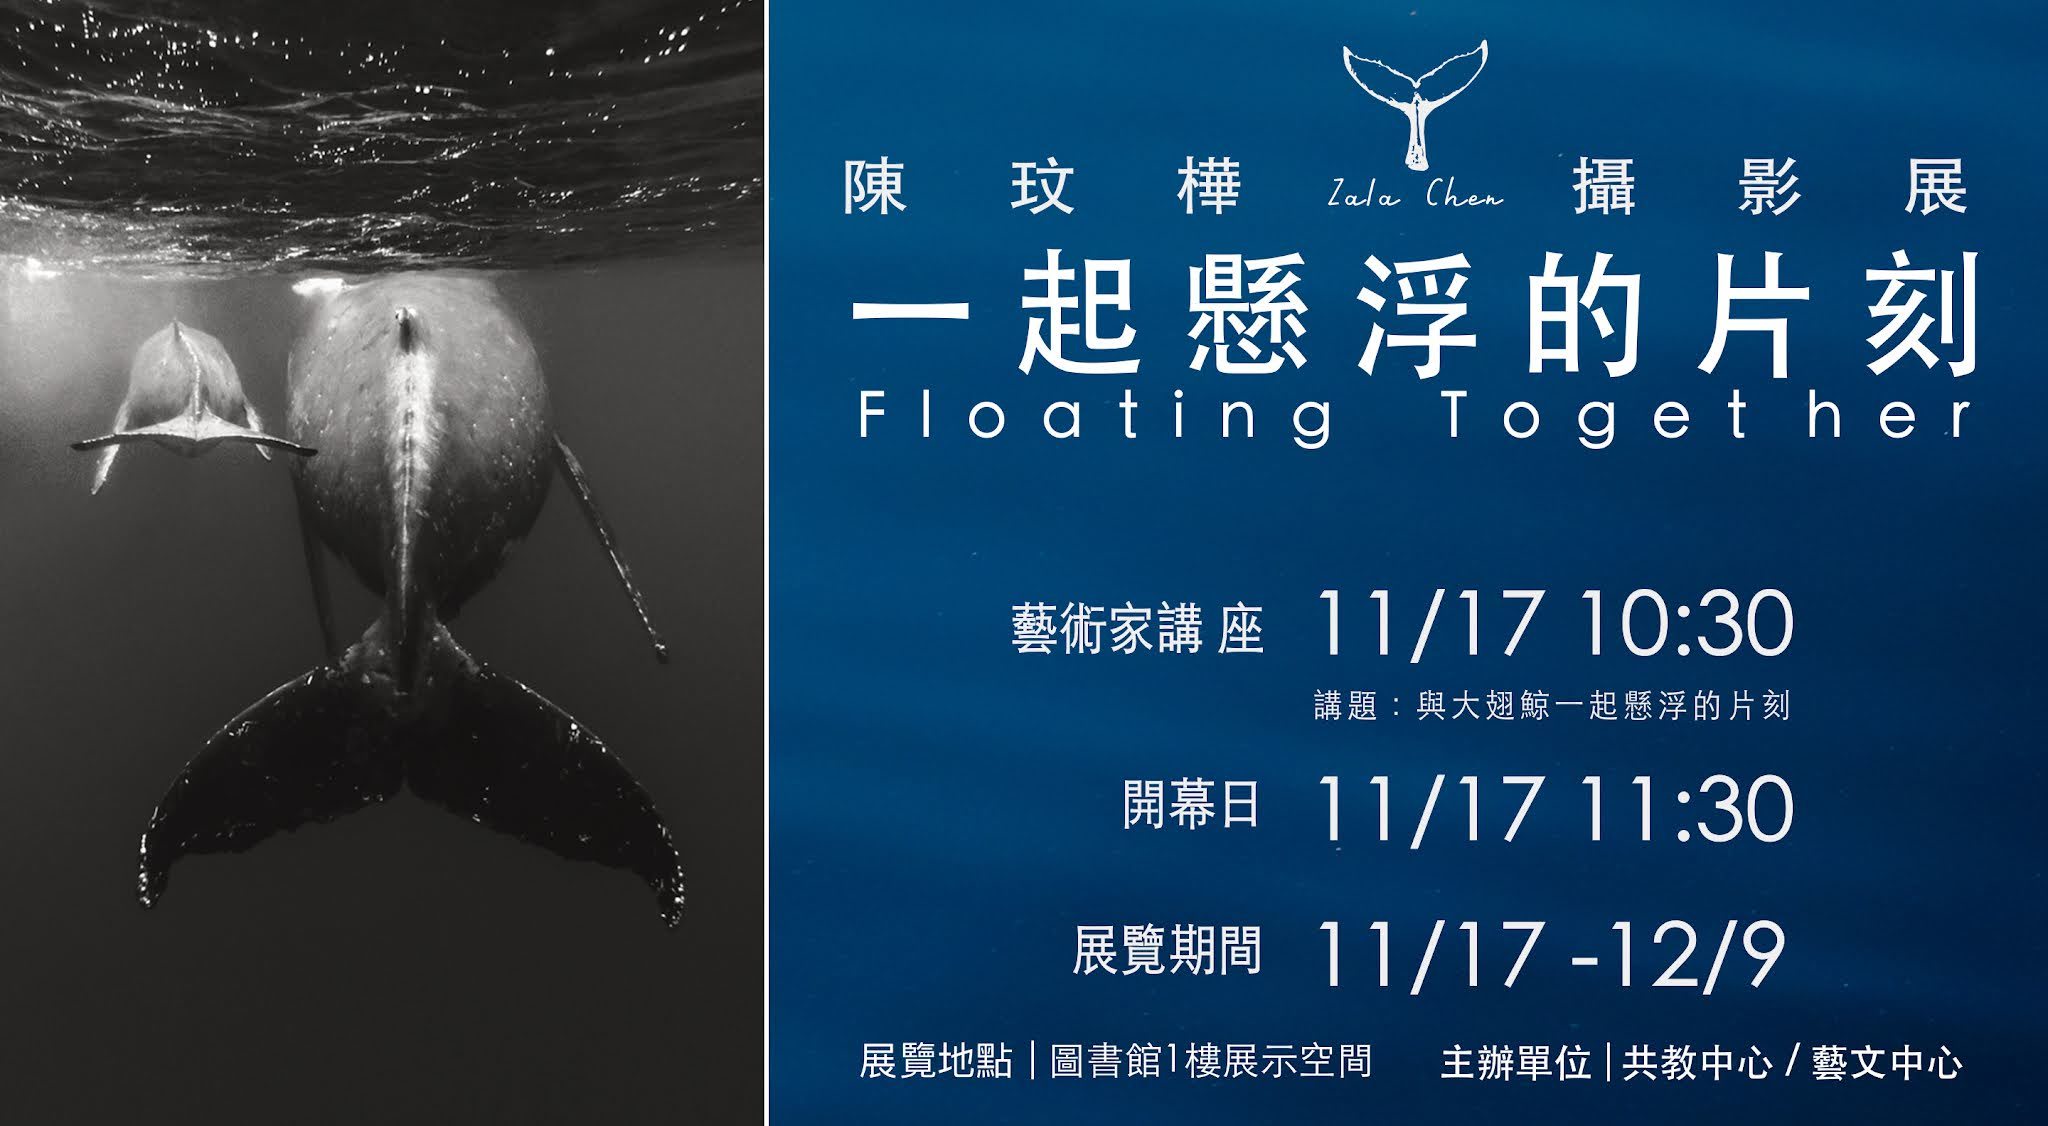 展期11月17日至12月9日，歡迎一同欣賞精湛的海洋生態攝影作品